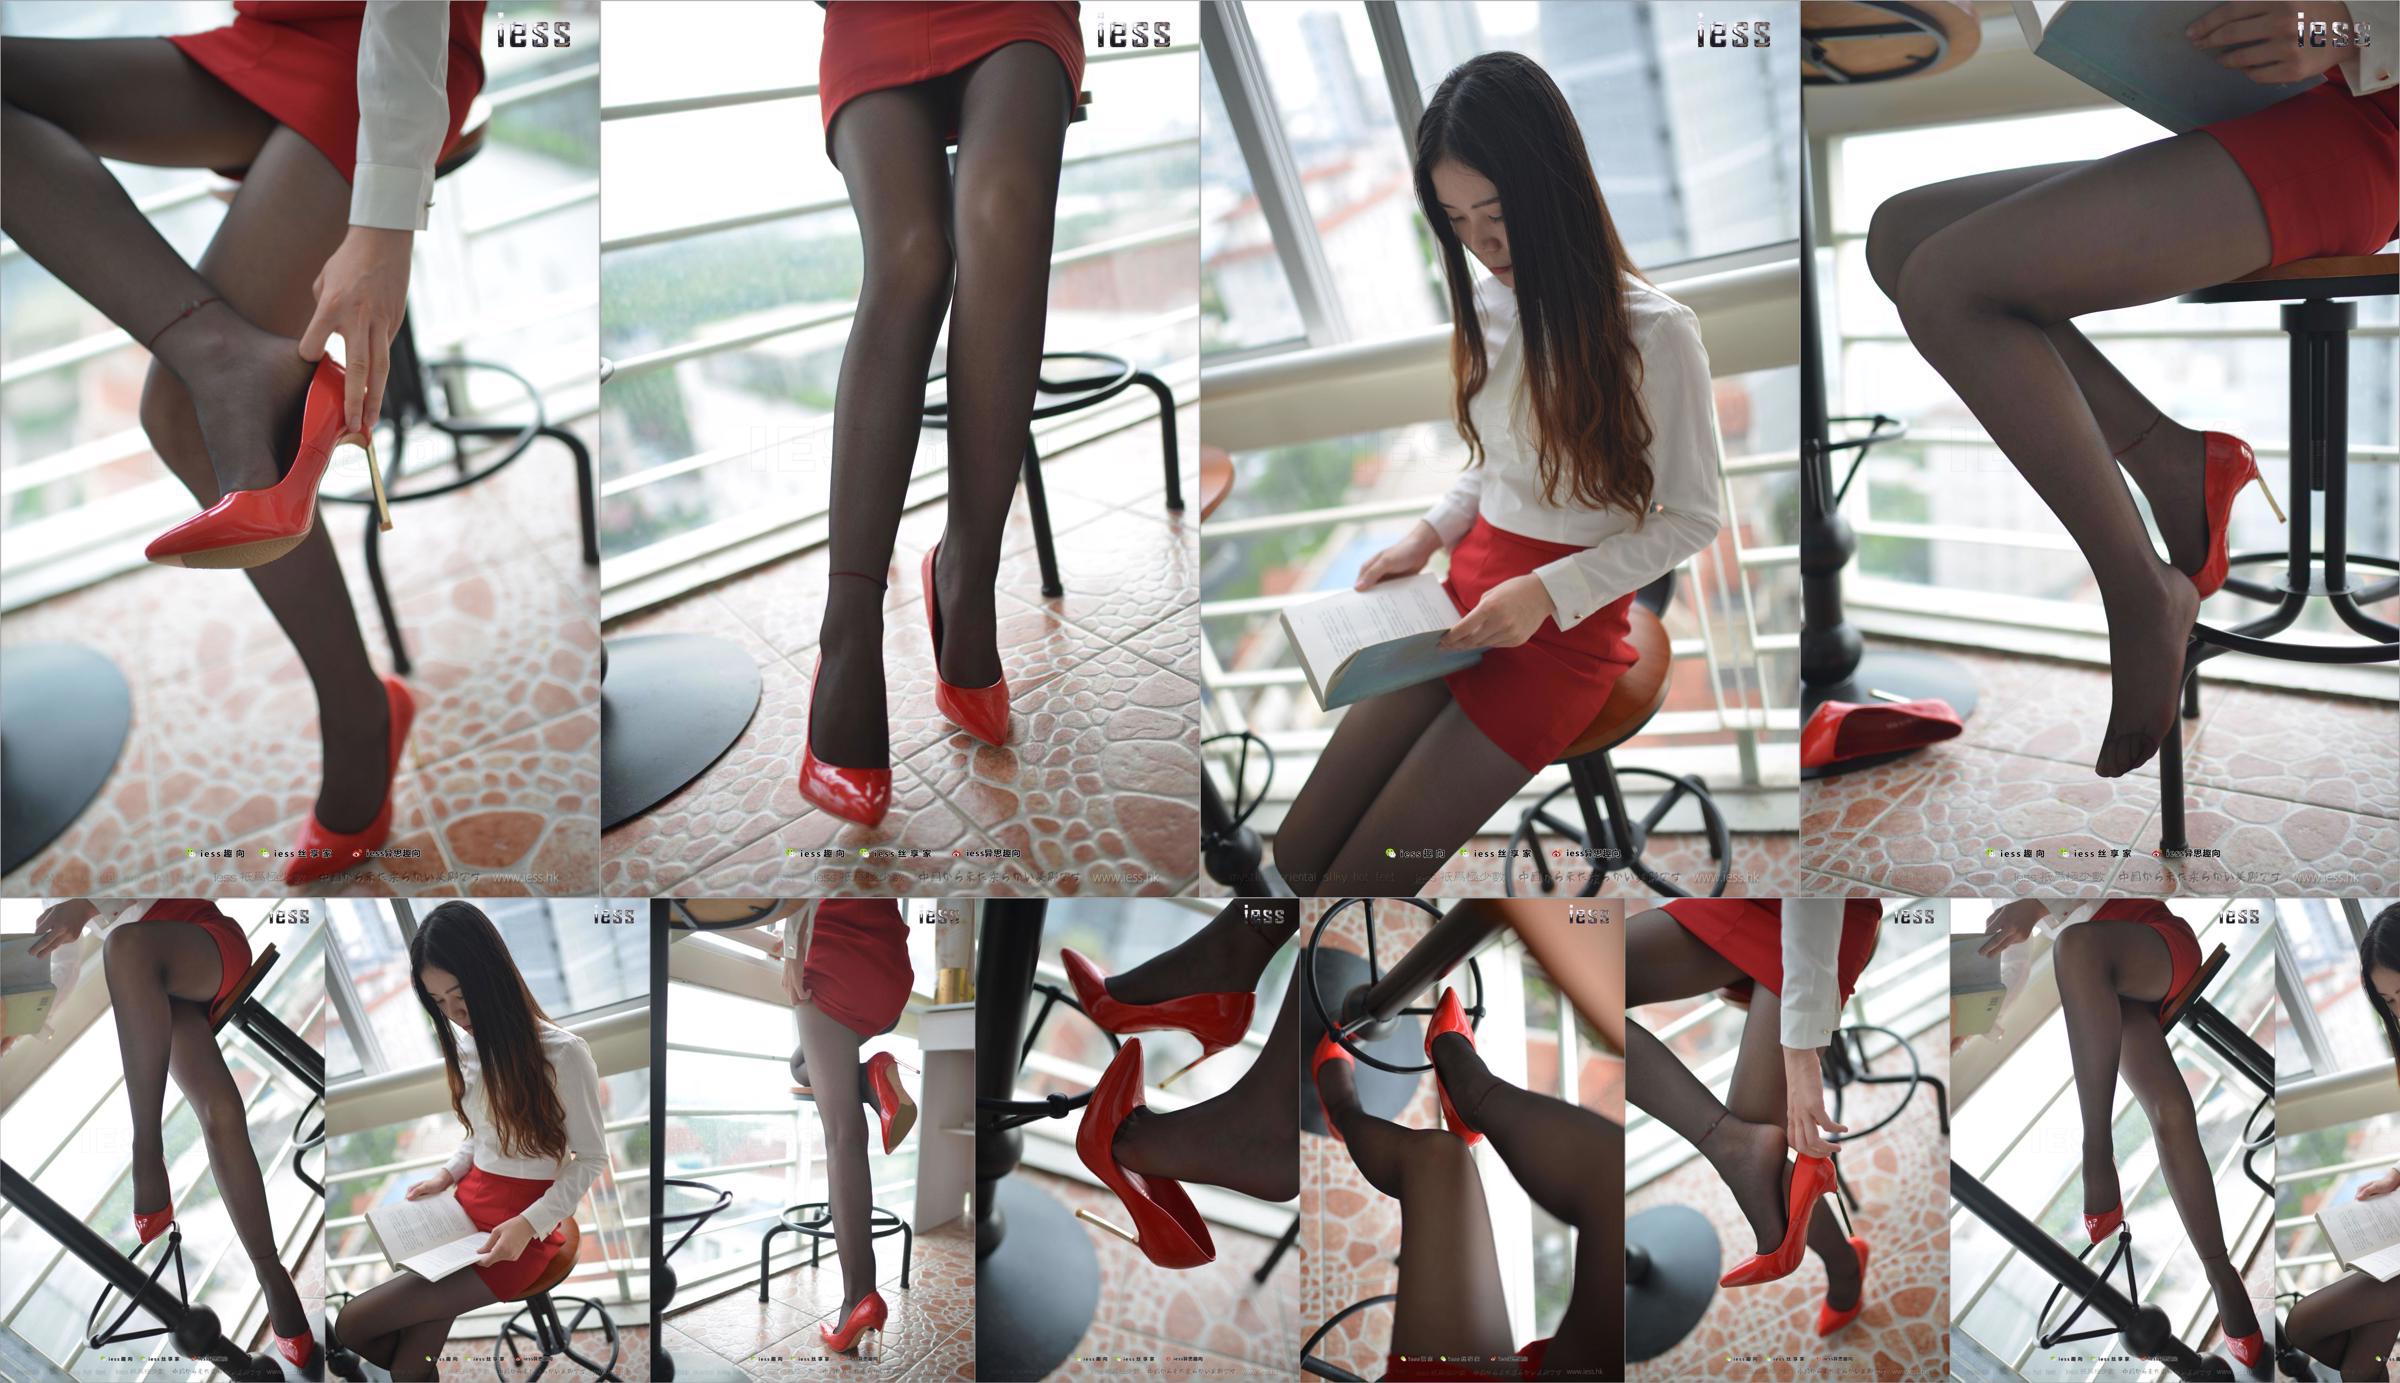 Silk Foot Bento 147 Concubine "Red High, Black Silk and Red Dress" [IESS Estranho Interessante] No.640ad3 Página 1